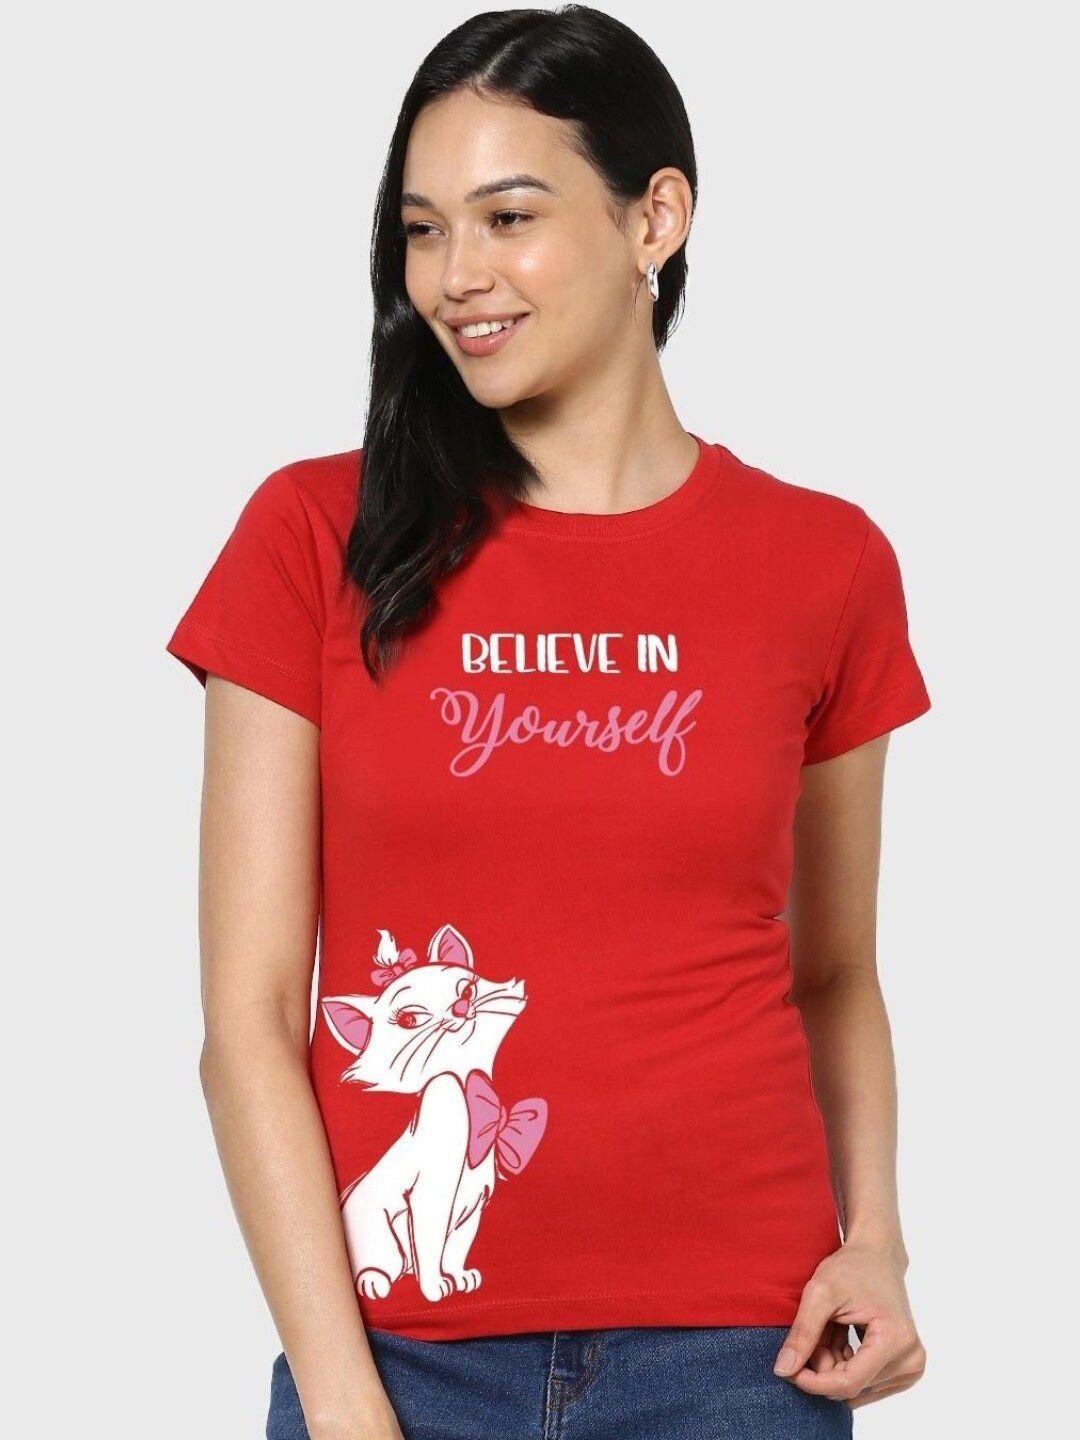 bewakoof women believe cat graphic printed t-shirt